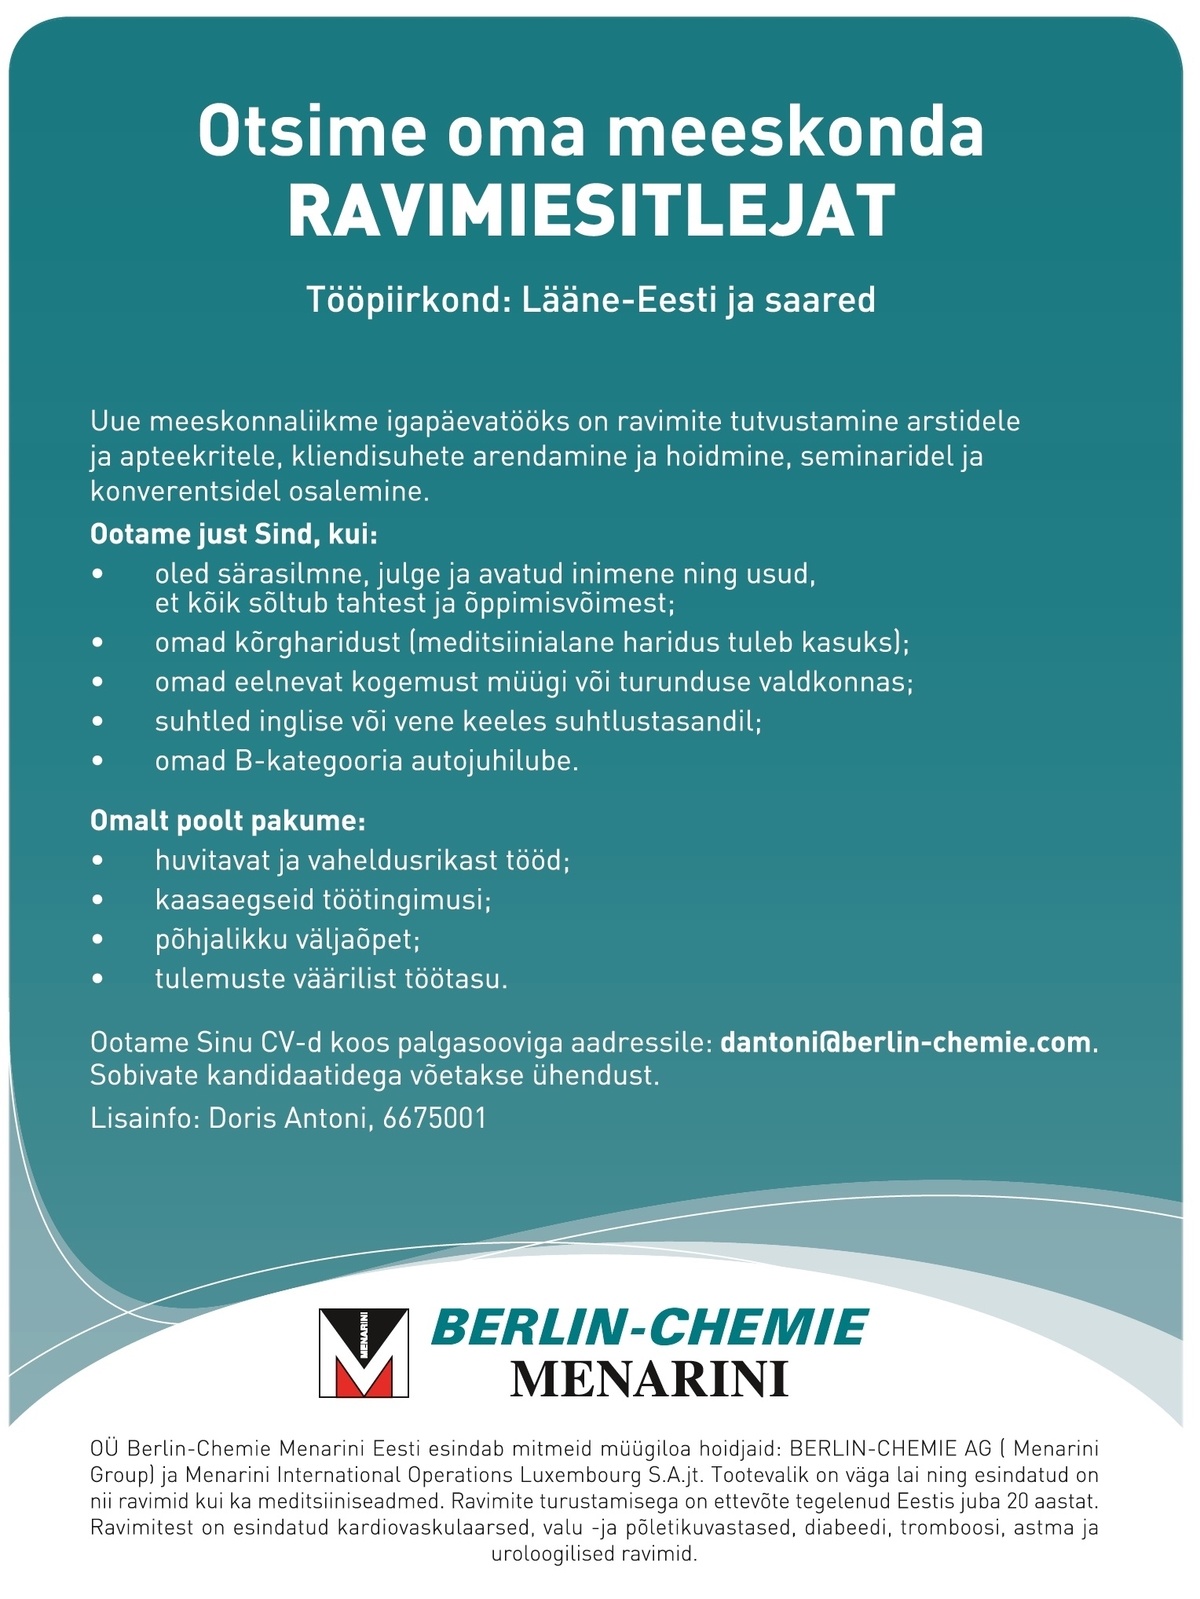 Berlin-Chemie Menarini Eesti OÜ Ravimiesitleja (Lääne-Eesti ja saared)